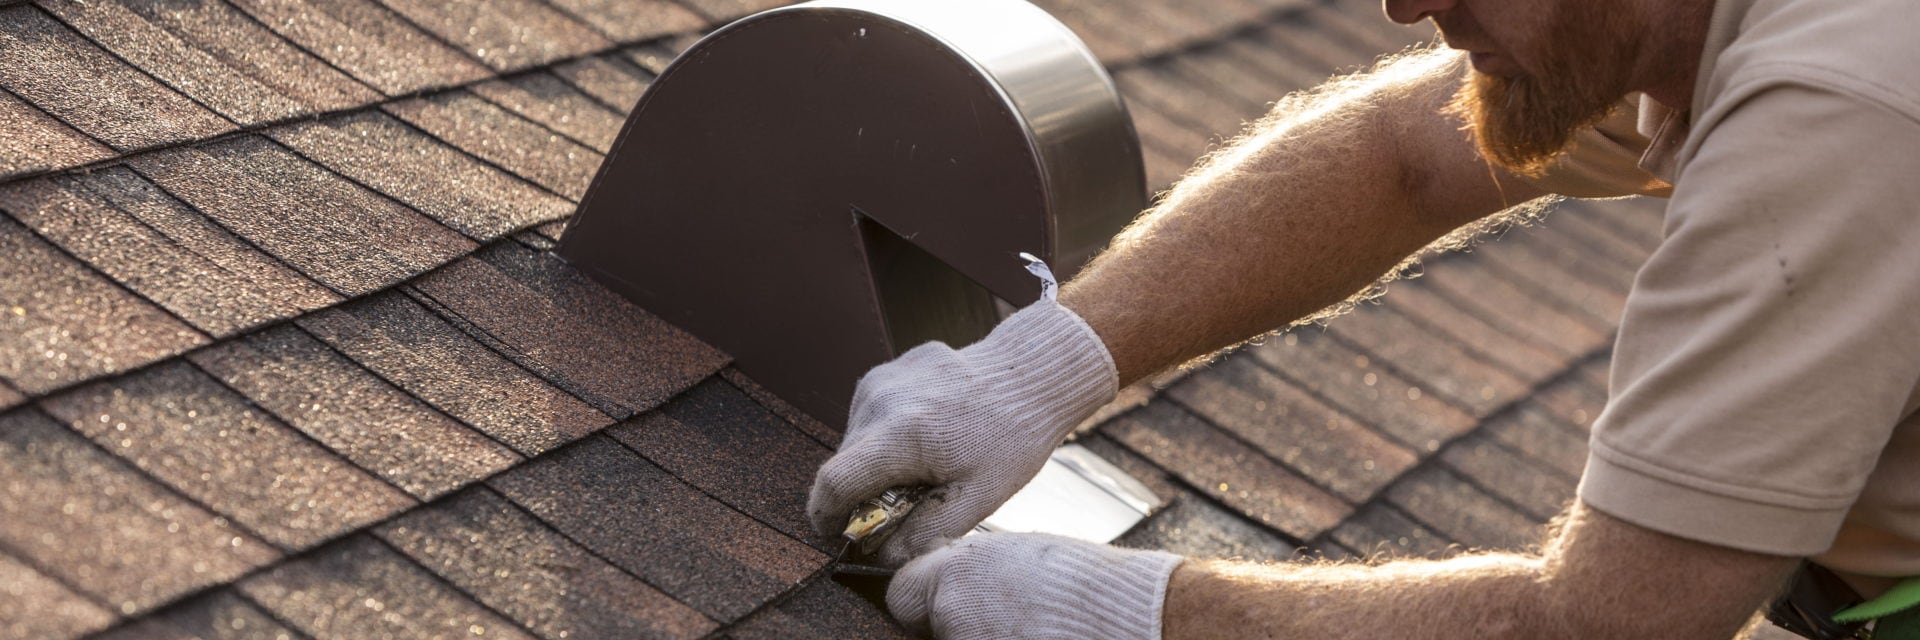 GAF certified roofer installing shingles on roof